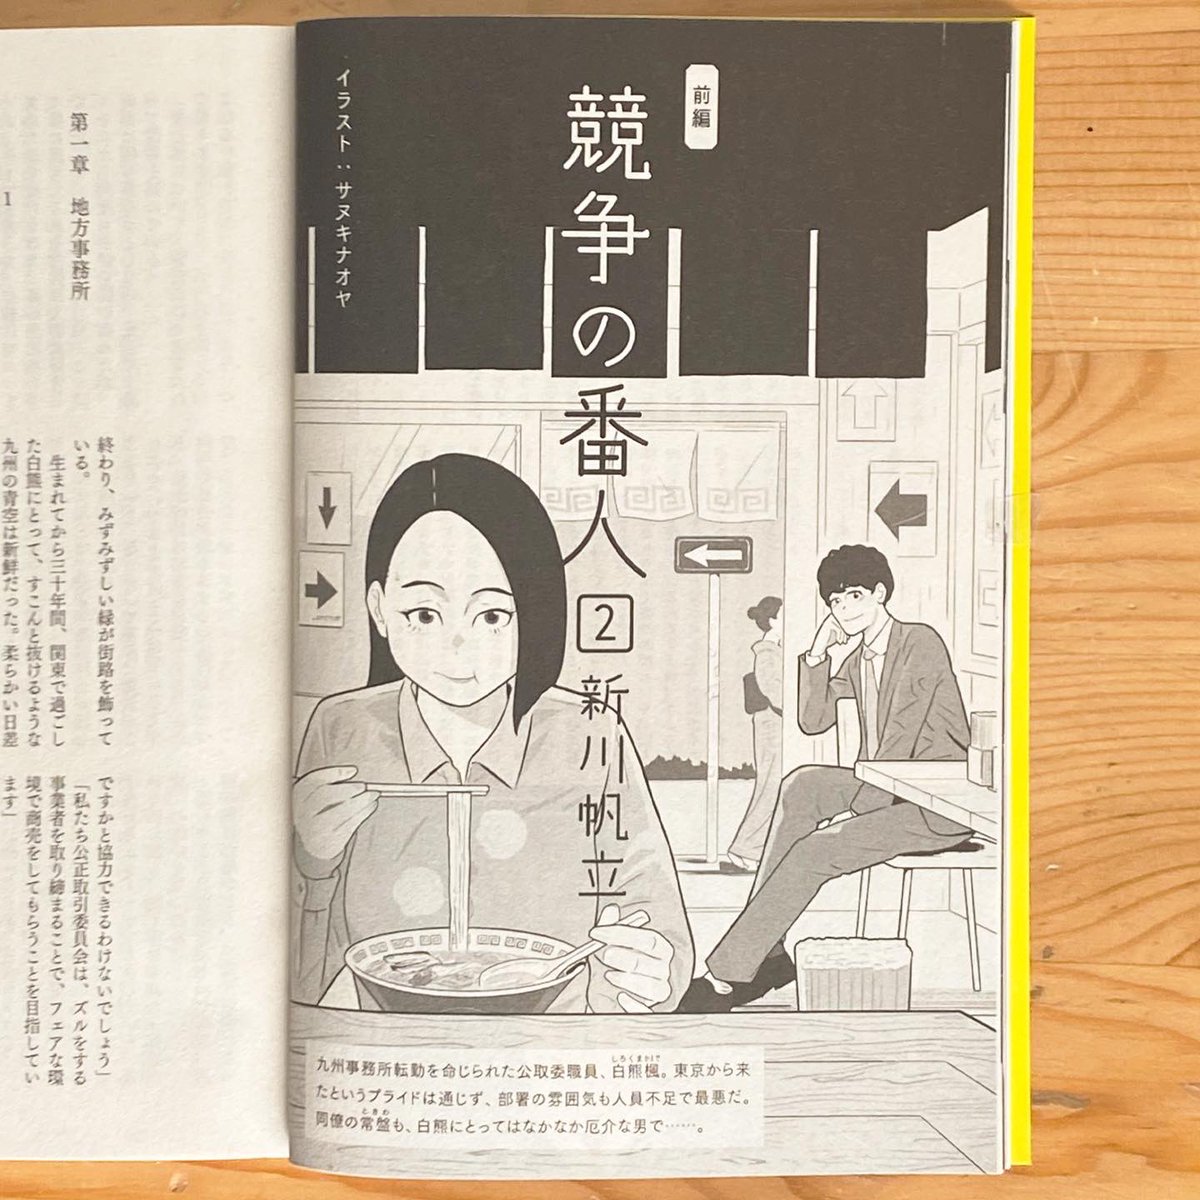 小説現代7月号にて新川帆立さん「競争の番人2(前編)」の扉絵を描いています。

チョイ読みコミックも◎

7月11日からはテレビドラマの放送も始まるようです。

#競争の番人
#新川帆立 